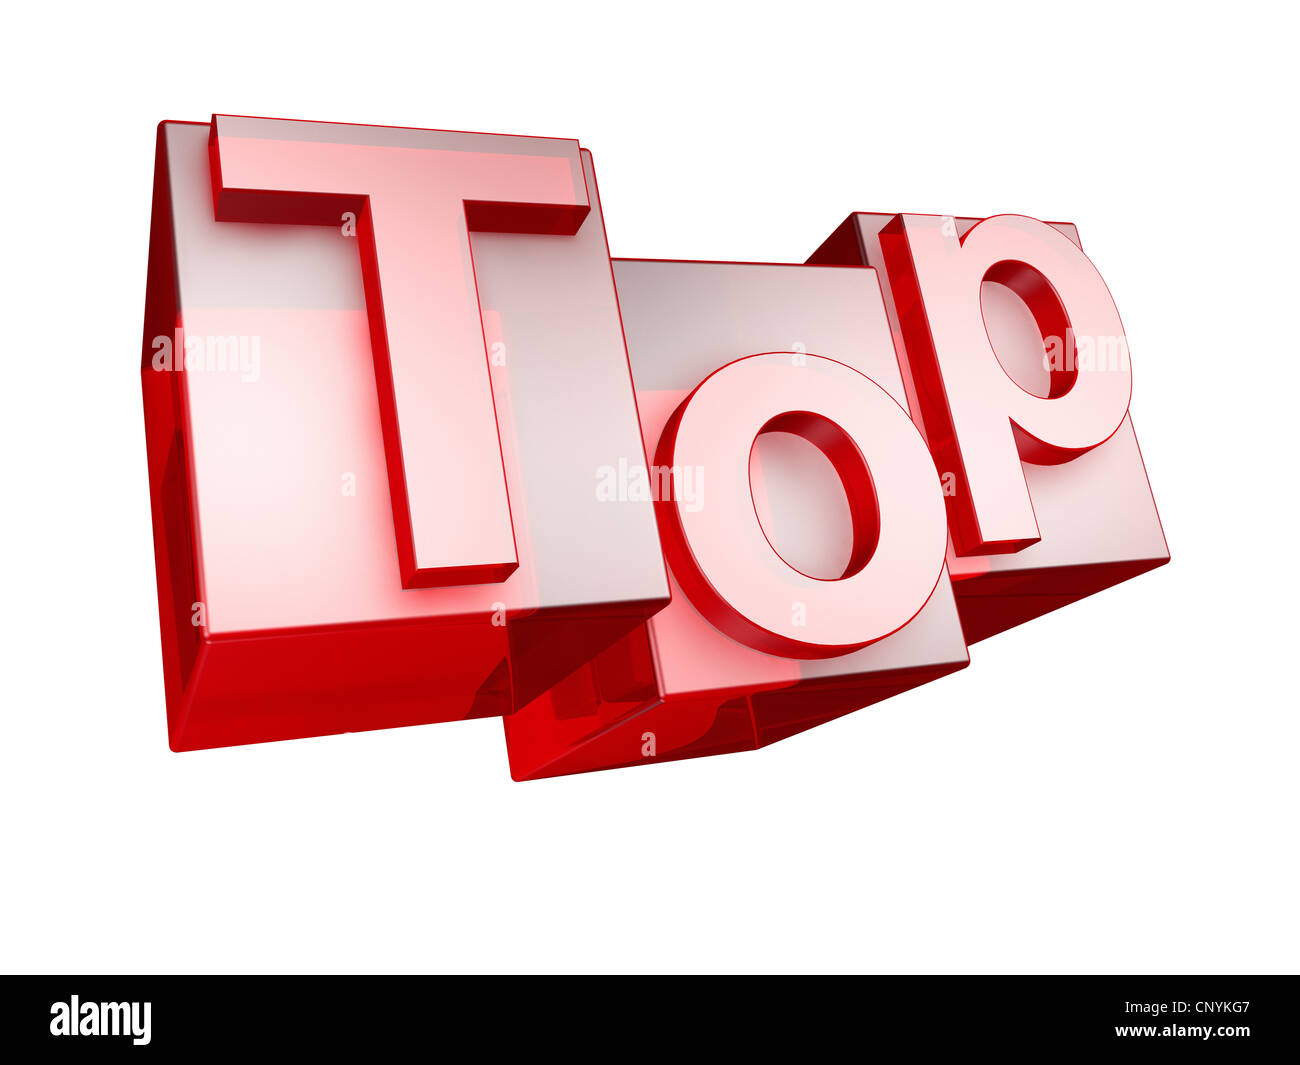 Das Wort TOP in 3D Buchstaben auf weißem Hintergrund - Das Johanniskraut TOP aus 3D Buchstaben Gesetzt, Freigestellt Auf Weißem Hintergrund Stockfoto